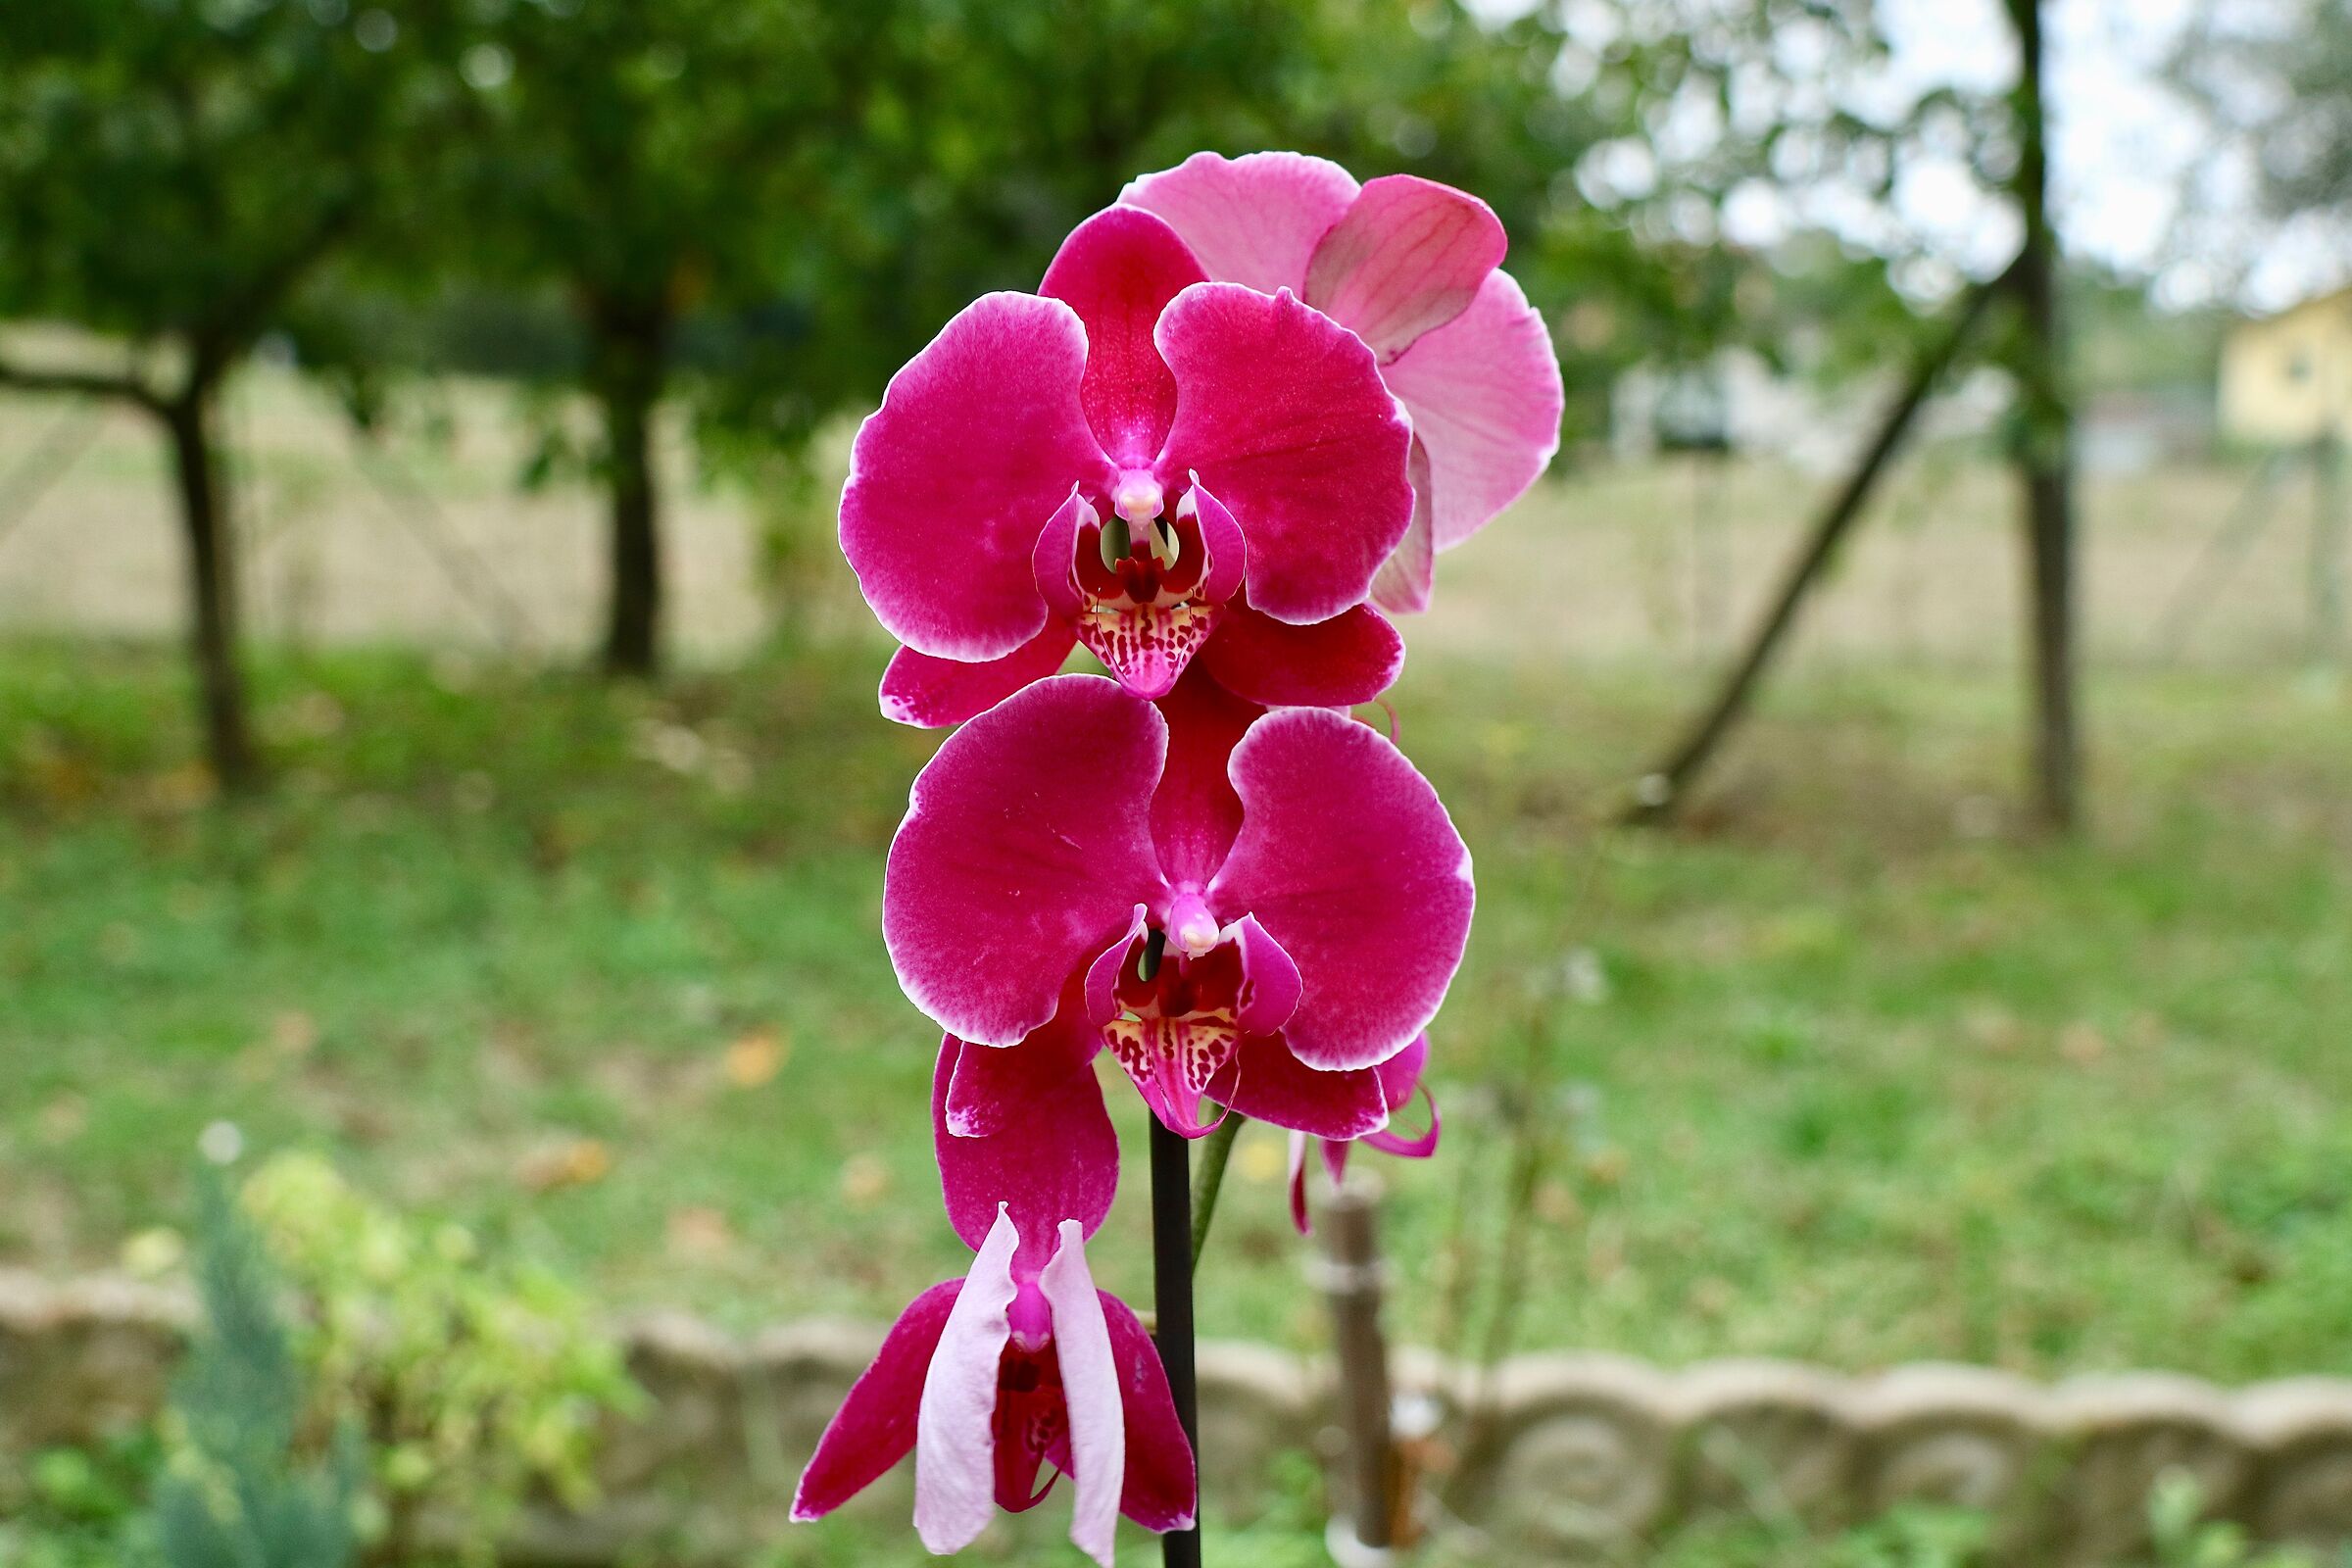 La signora delle orchidee....